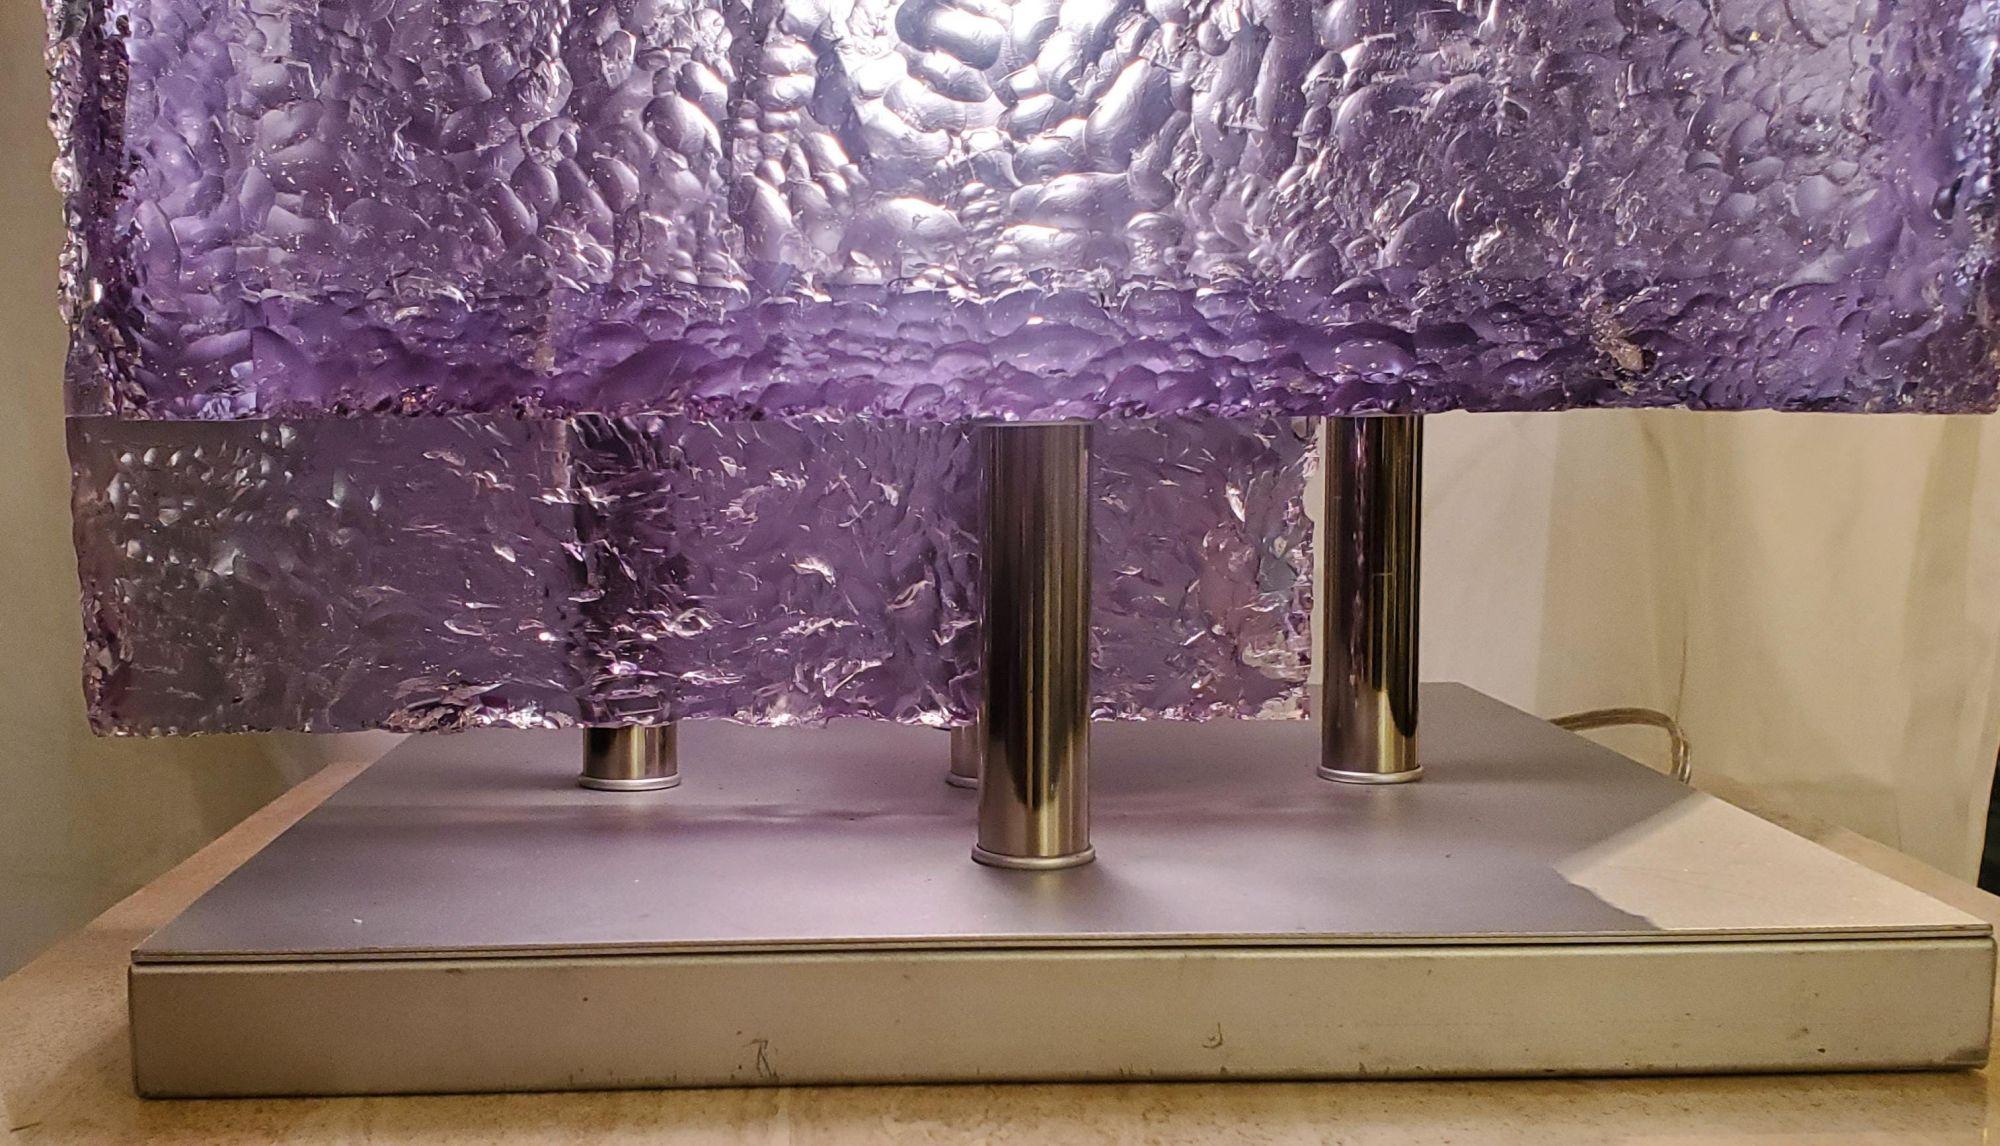 Lampe de table italienne post-moderne en lucite glacée cubée. L'un des côtés, très bien réalisé, s'ouvre pour montrer l'éclairage intérieur et permettre de changer facilement d'ampoule. La lueur violette est due à l'éclairage jaune qui illumine la